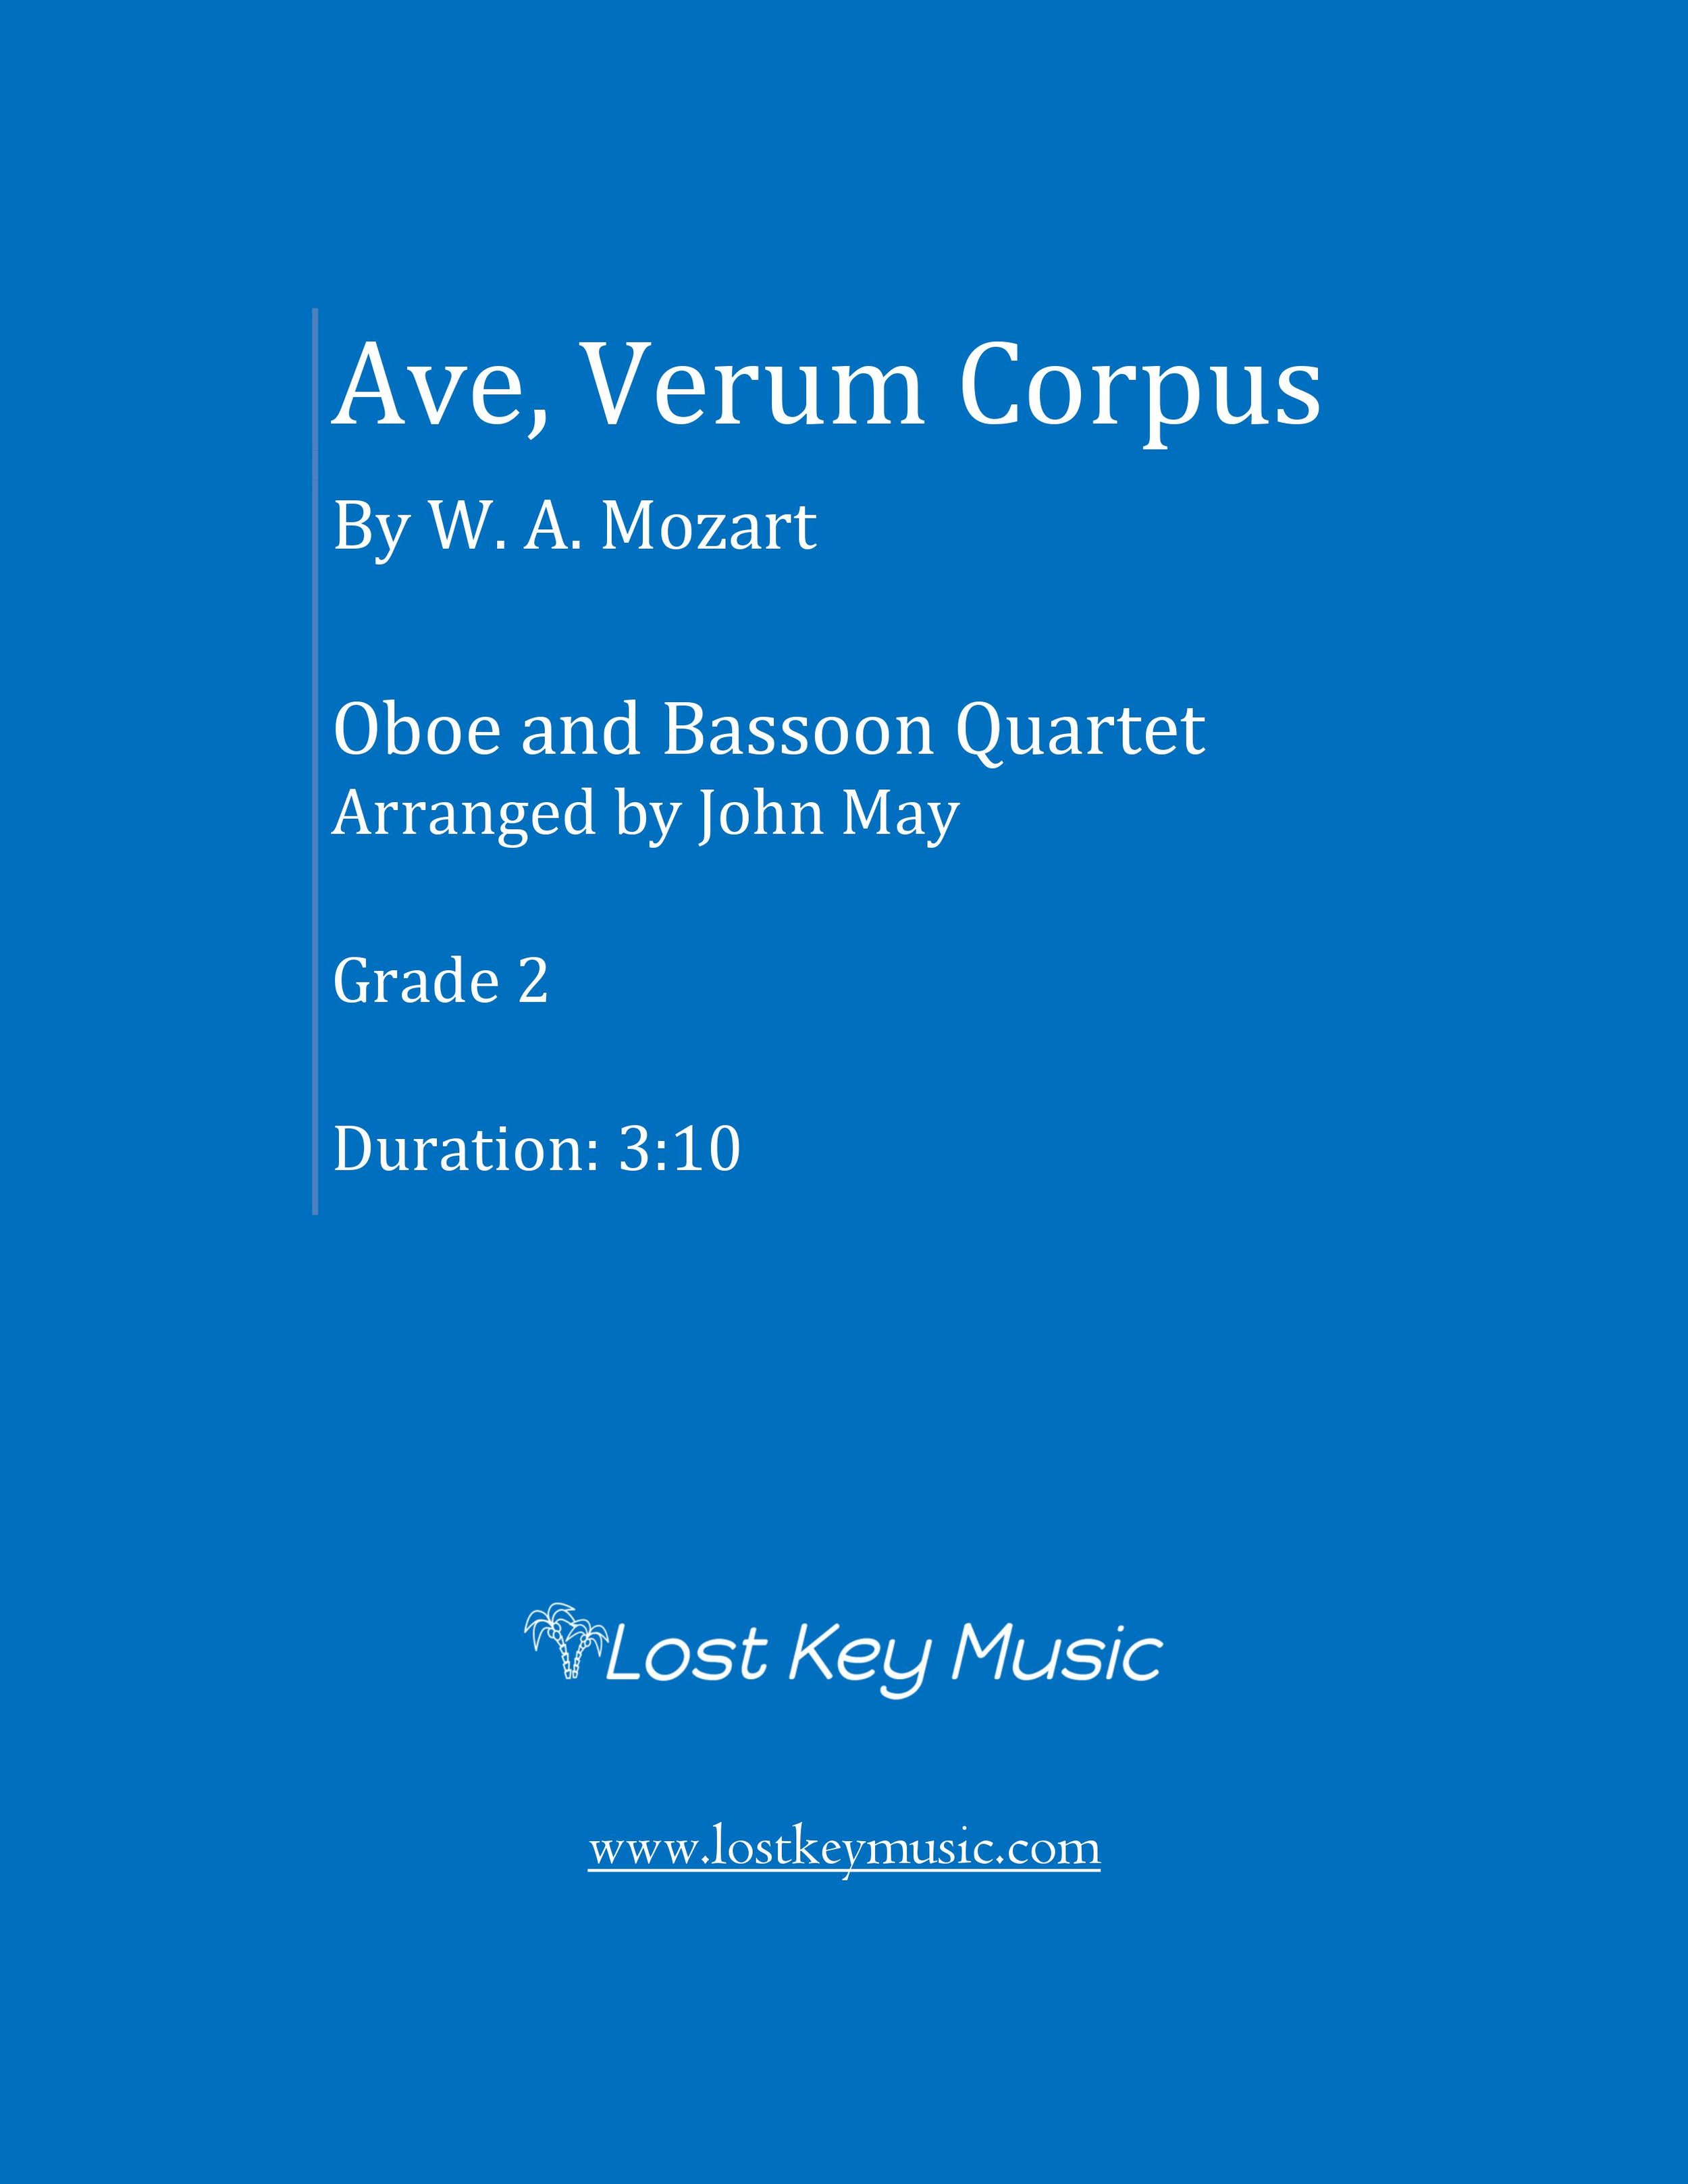 Ave Verum Corpus-Oboe and Bassoon Quartet (Digital Download)